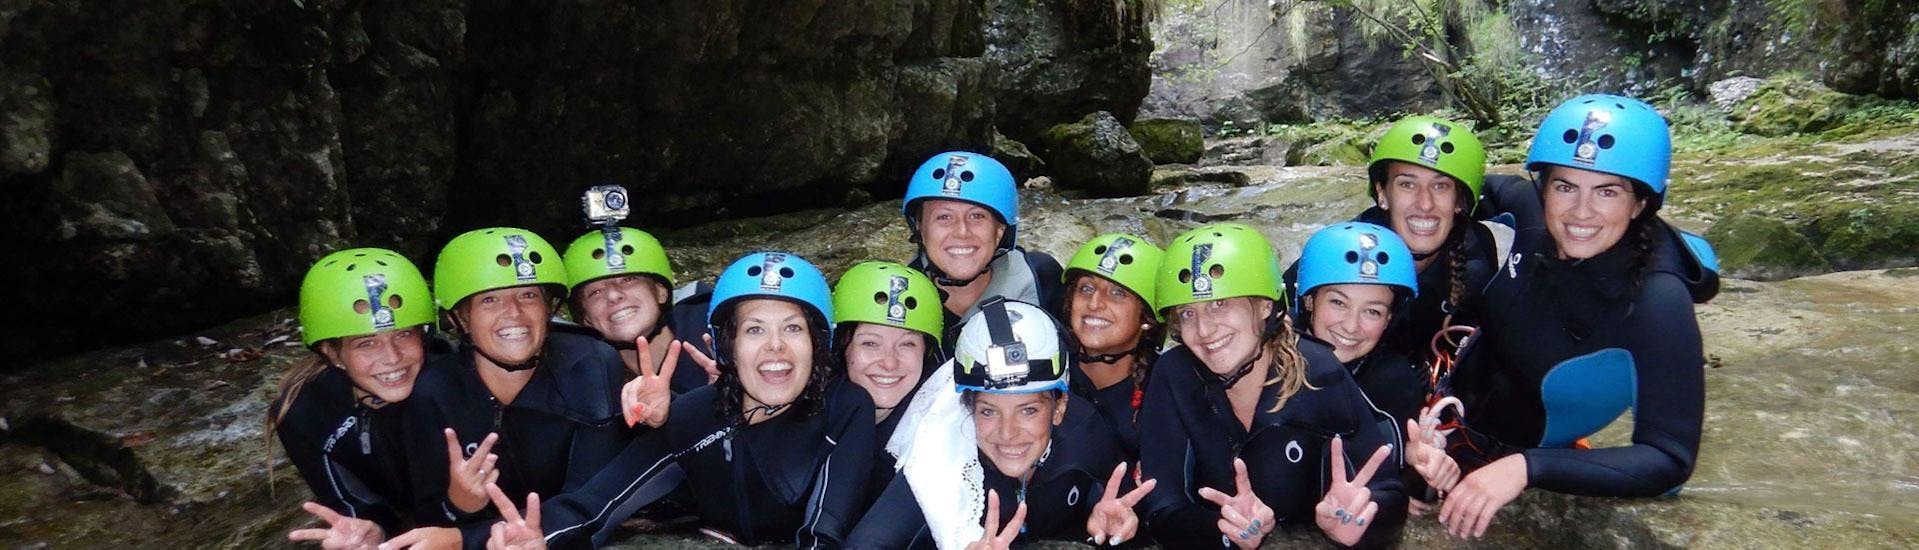 Delle amiche se stanno divertendo nel canyon durante l'attività Canyoning nel Torrente Tignale organizzata da LOLgarda.